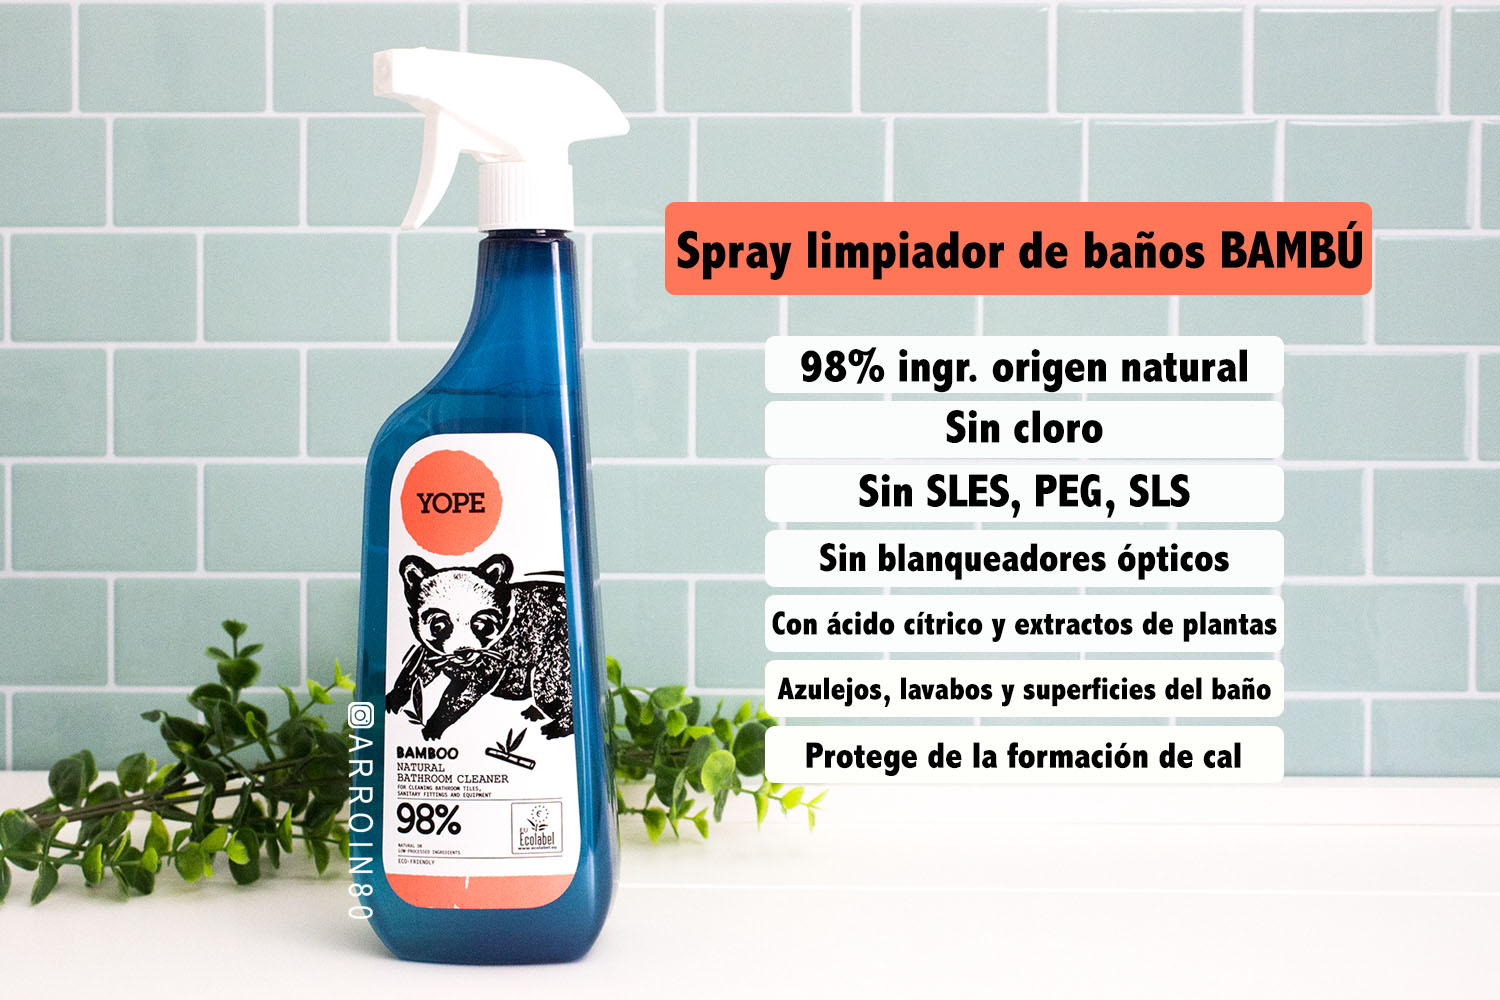 Spray limpiador multiusos - Bambú - YOPE